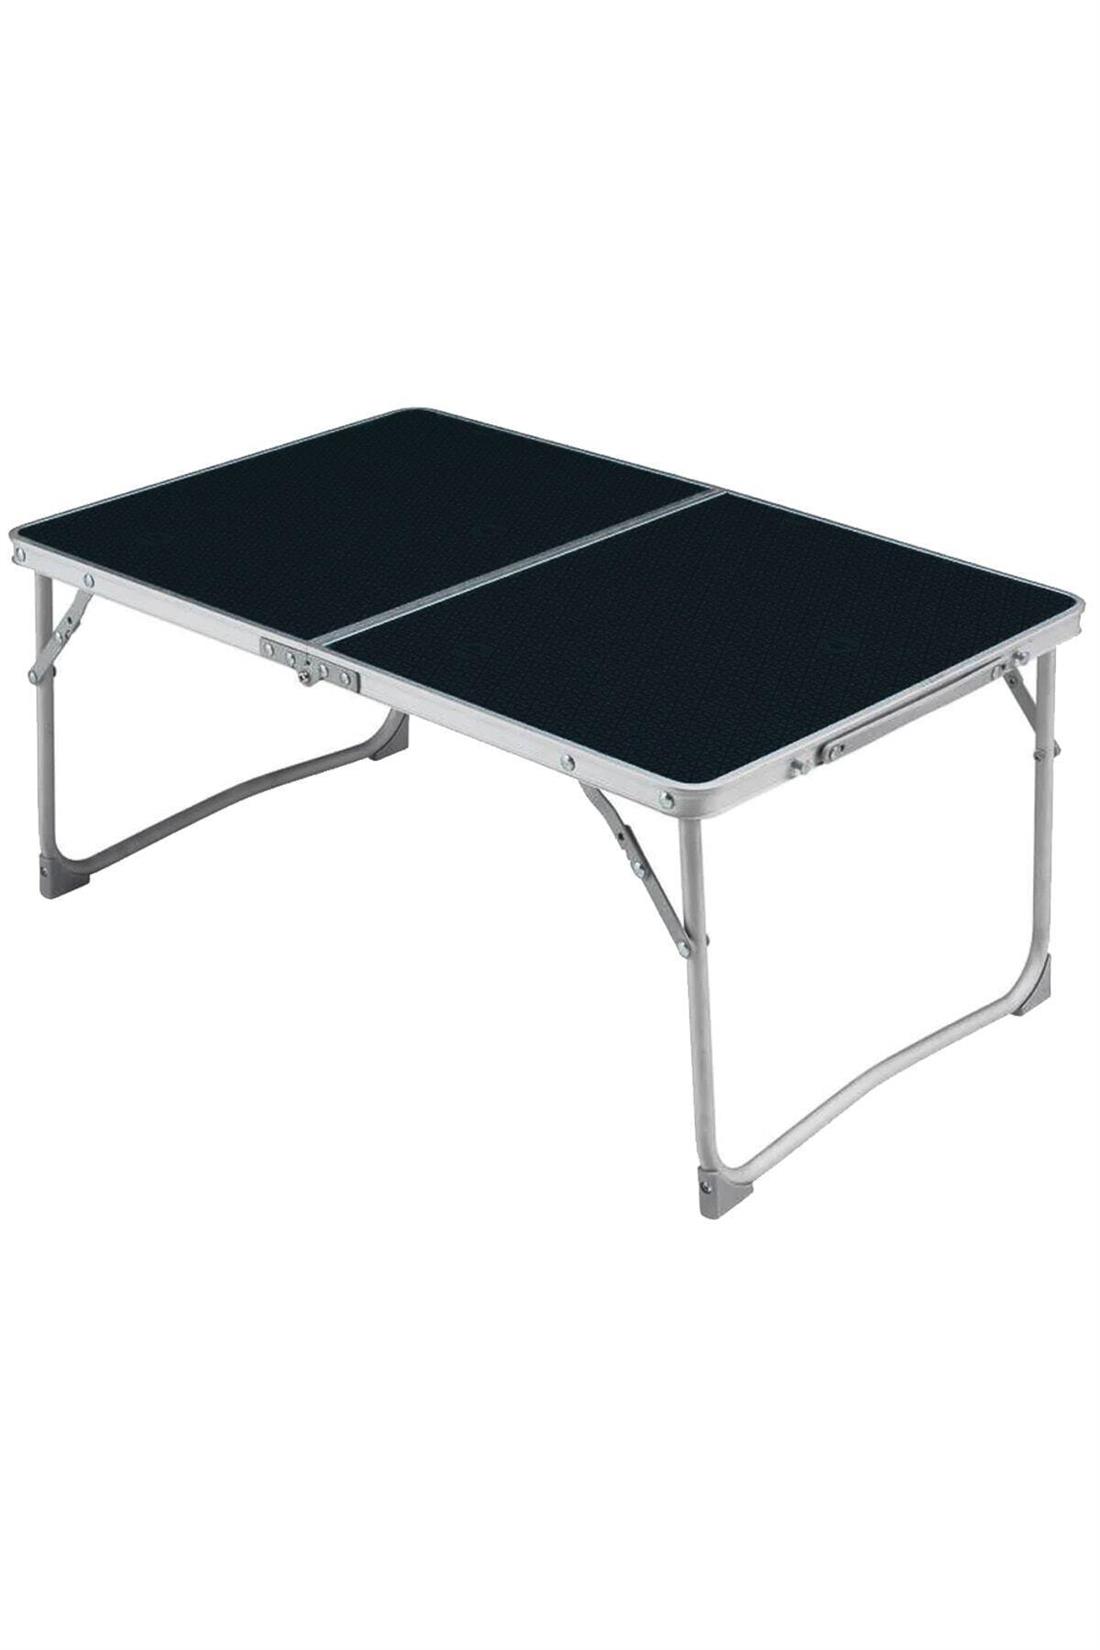 Siyah Katlanır Kamp Masası 60x40 cm - Plaj Masası - Taşınabilir Masa